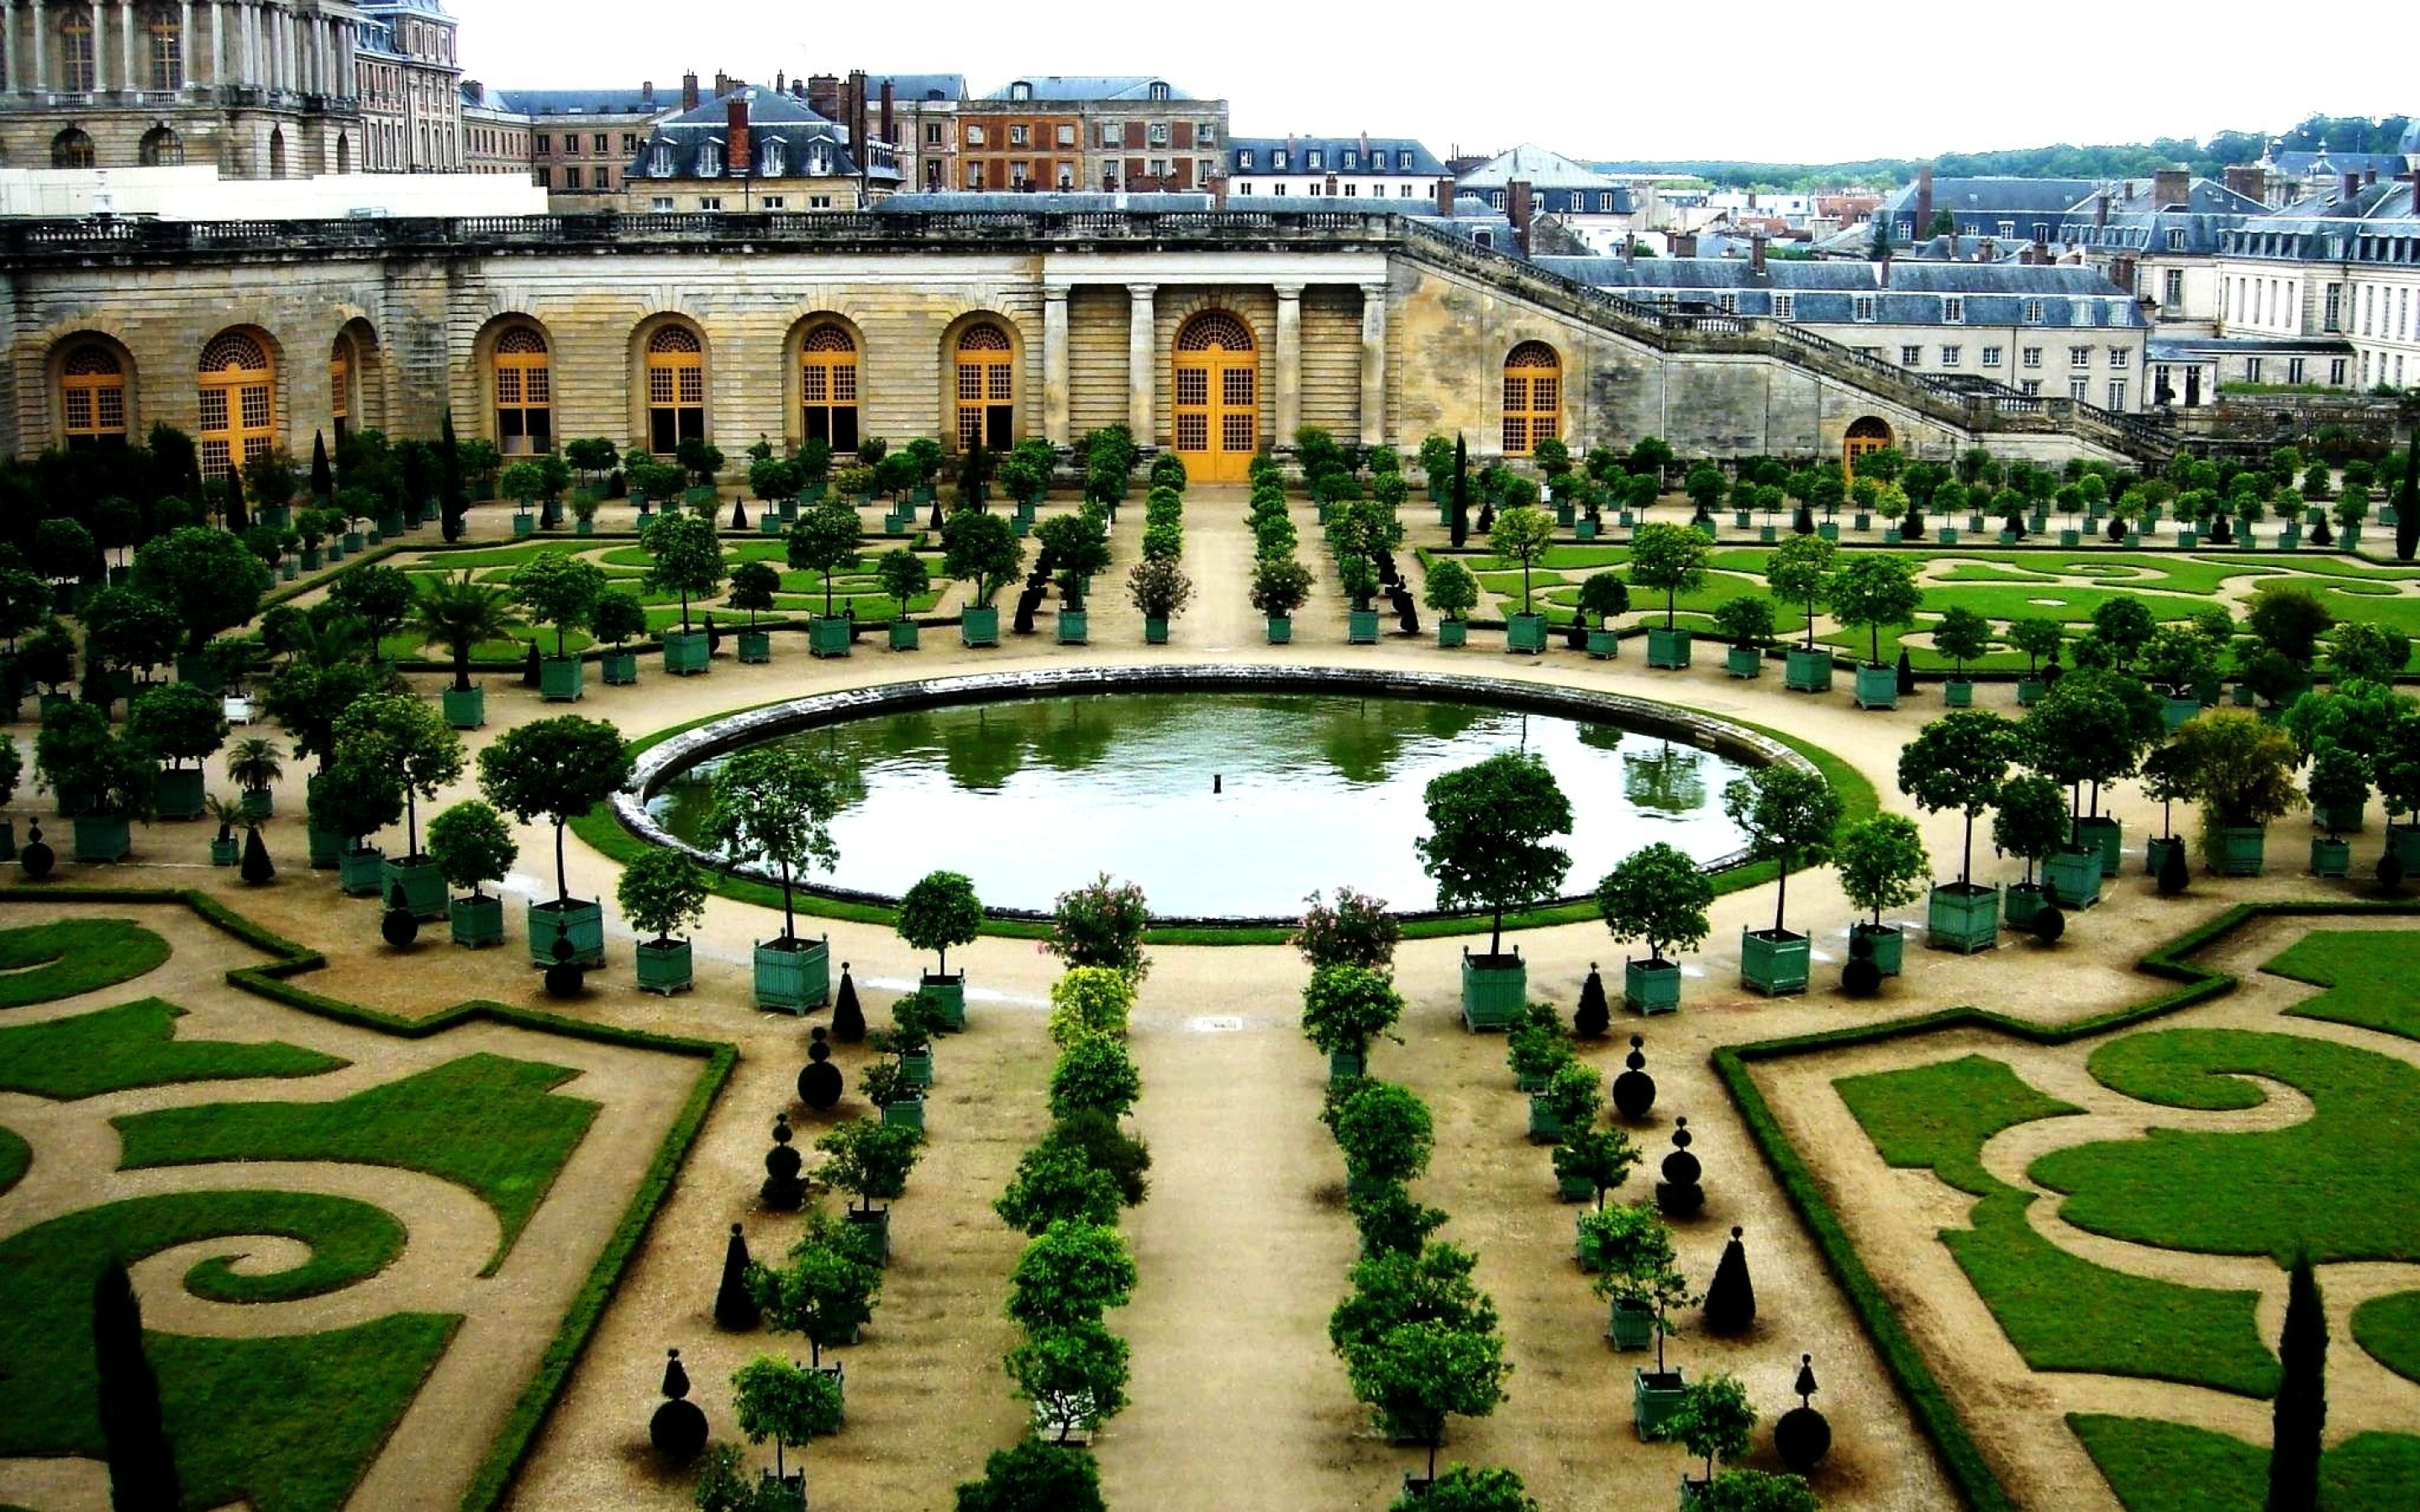 Про версаль. Версальский дворец Версаль Франция. Дворцово-парковый комплекс Версаль (Париж, Франция). Версальский дворец и сады во Франции. Версальский дворец парковый комплекс.